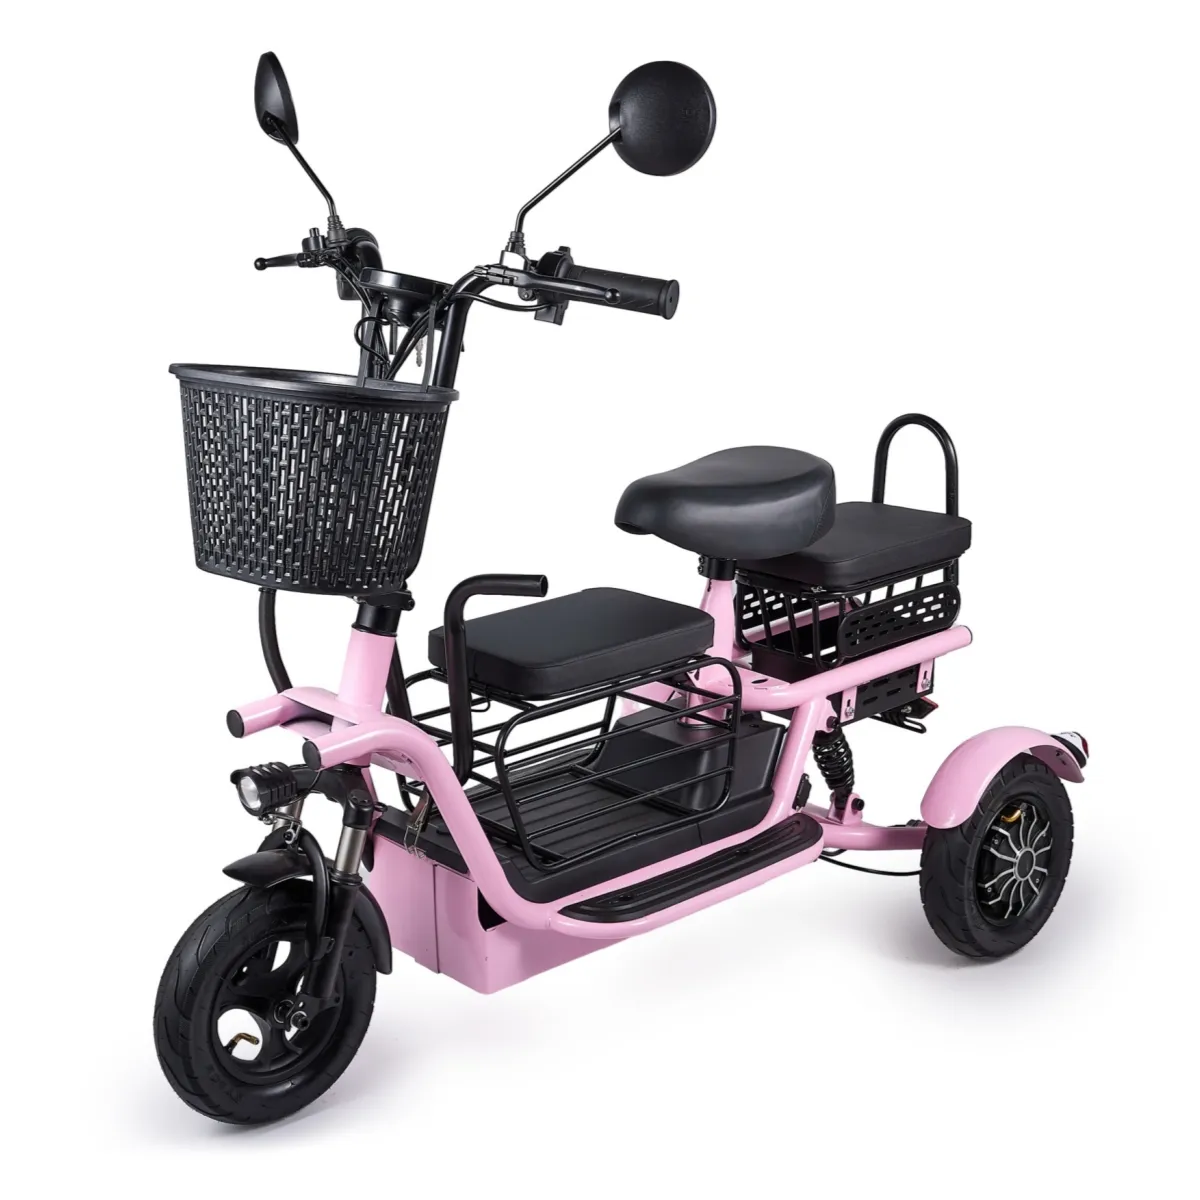 Sepeda roda tiga elektrik sepeda motor roda tiga, transportasi rumah tangga kecil untuk anak-anak, skuter listrik orang tua-anak 3 roda tiga